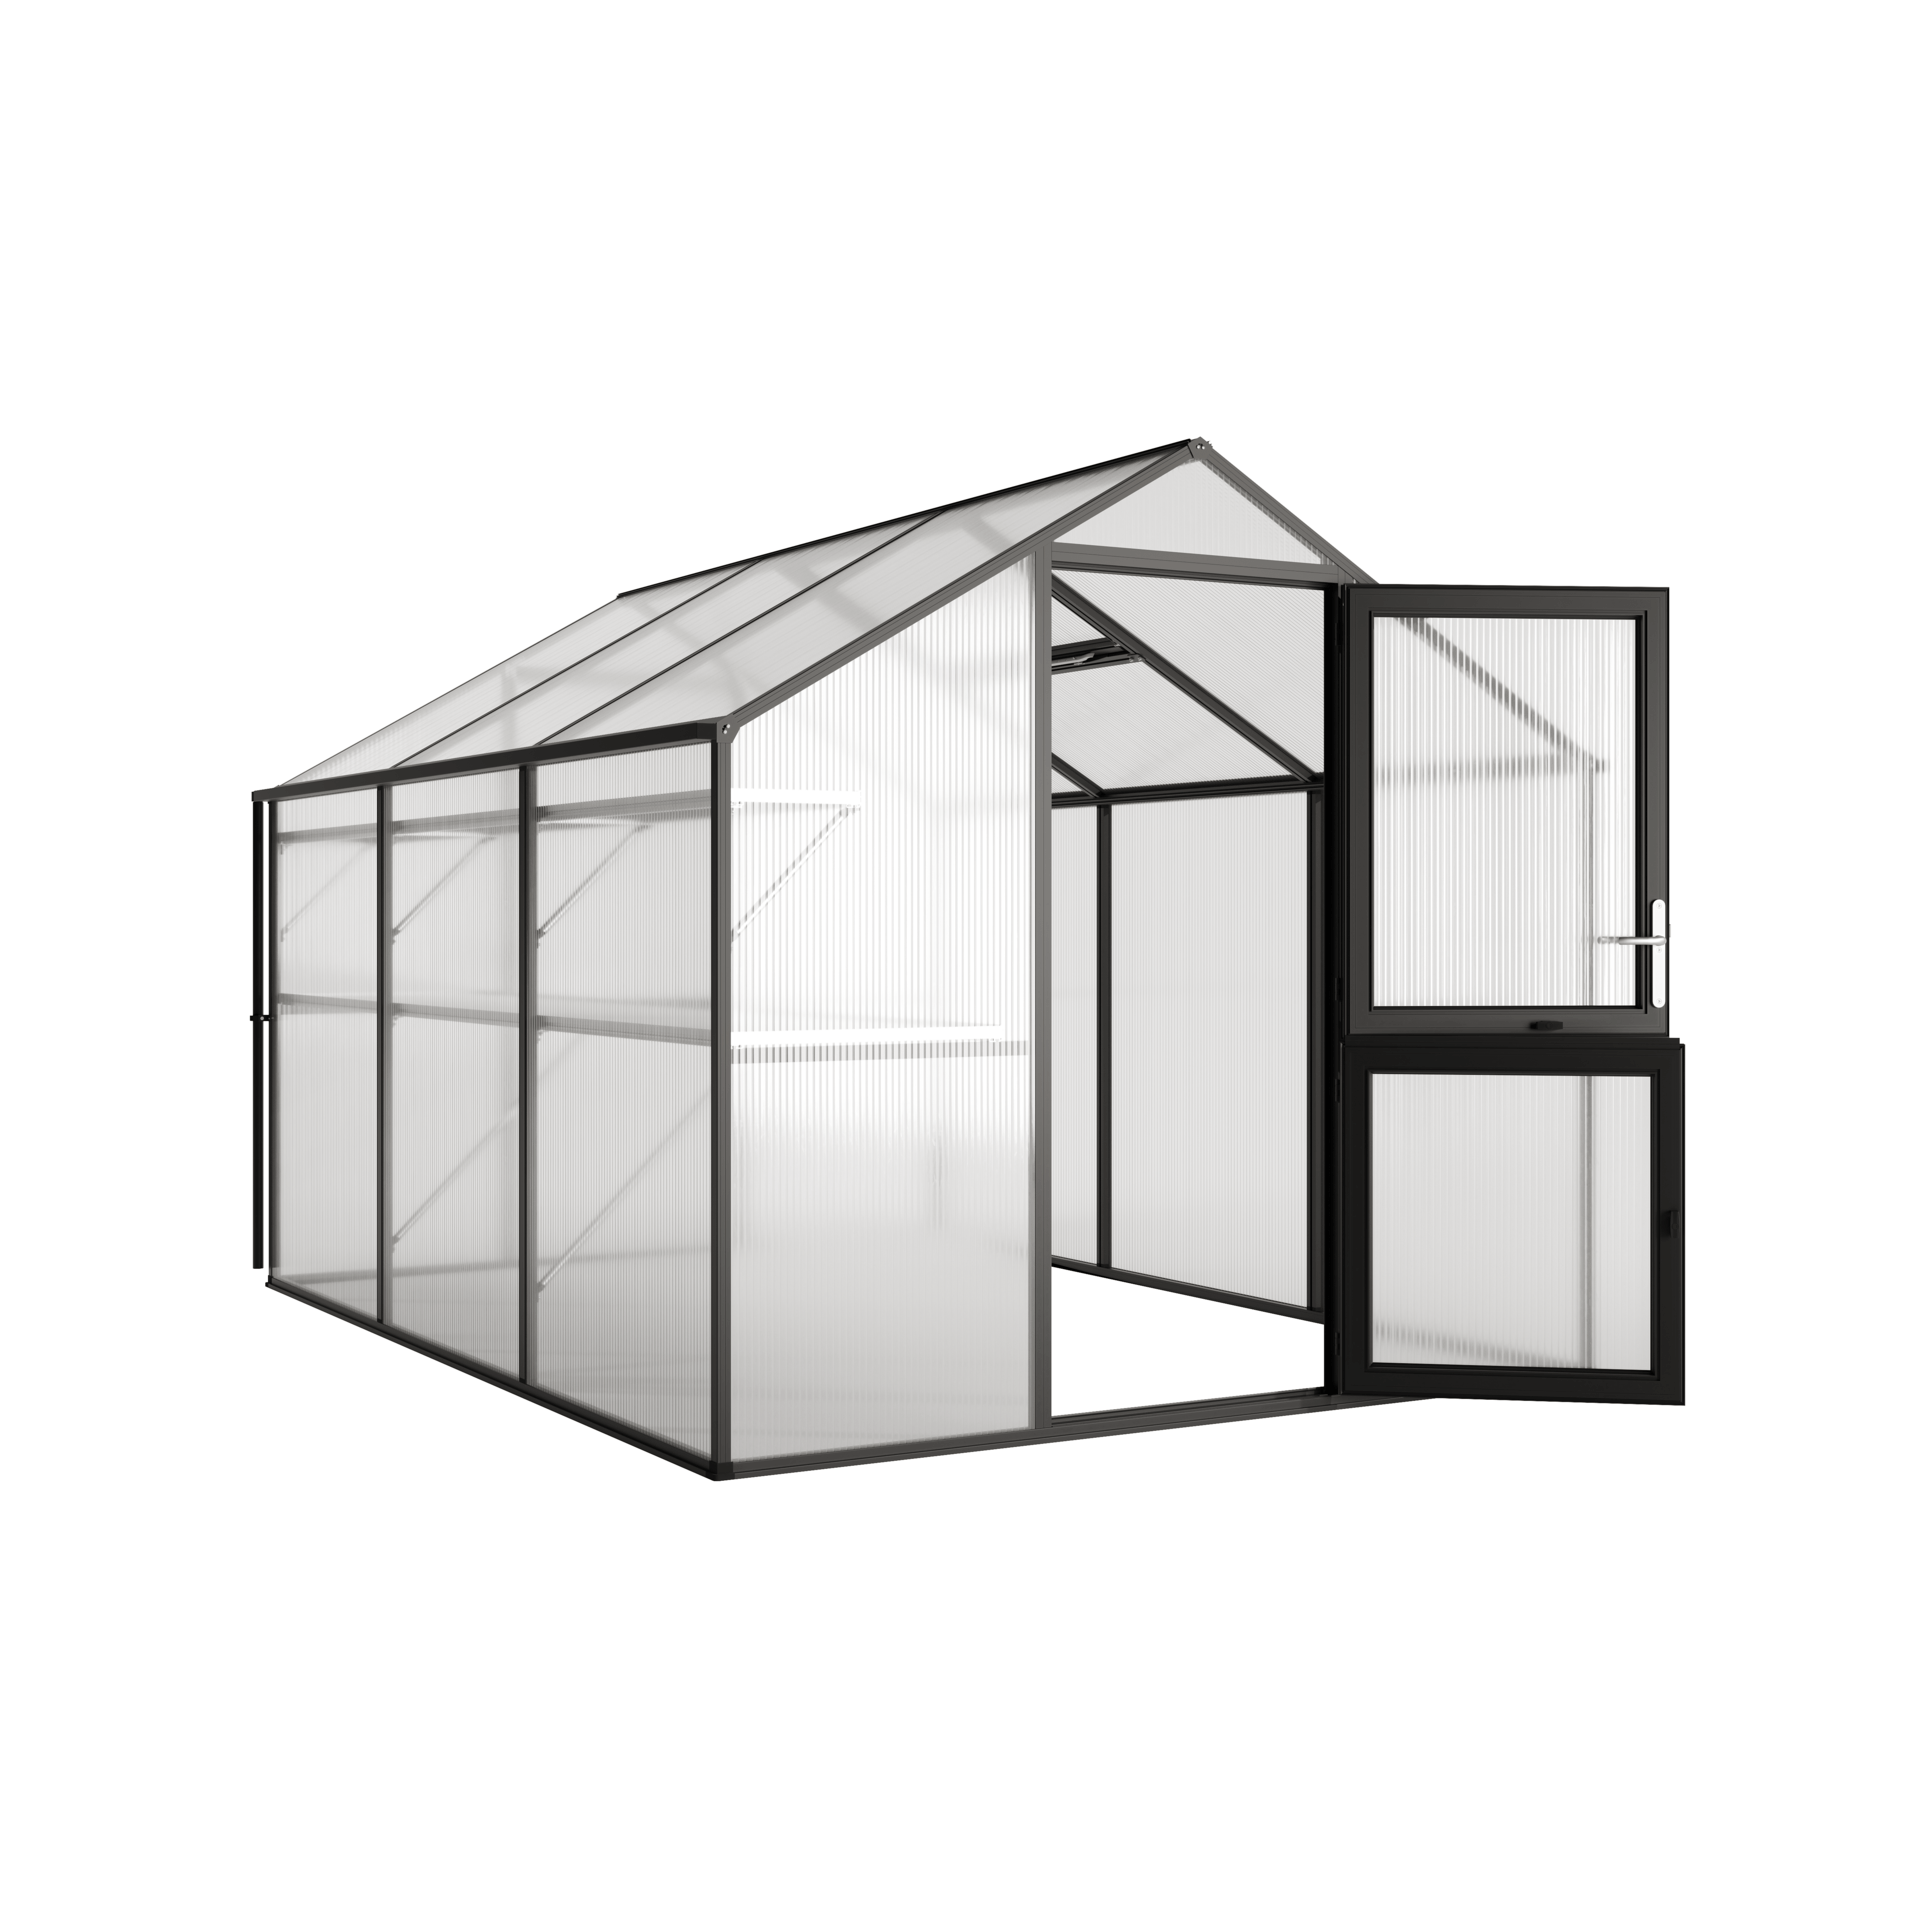 Produktvisualisierung eines Gewächshauses aus Glas